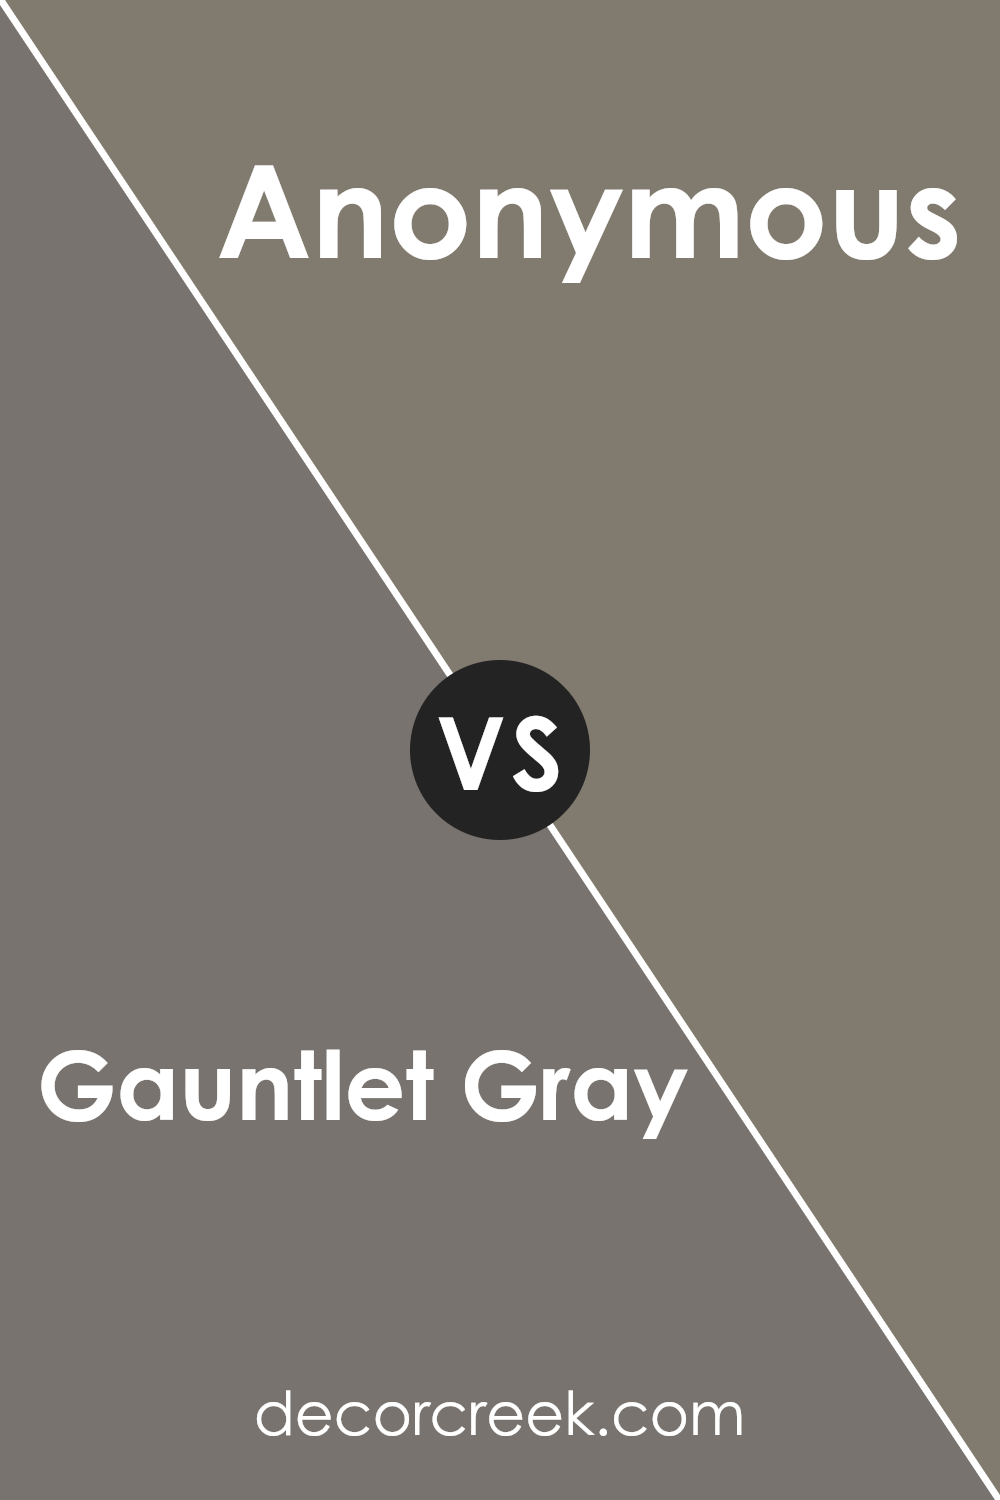 gauntlet_gray_sw_7019_vs_anonymous_sw_7046